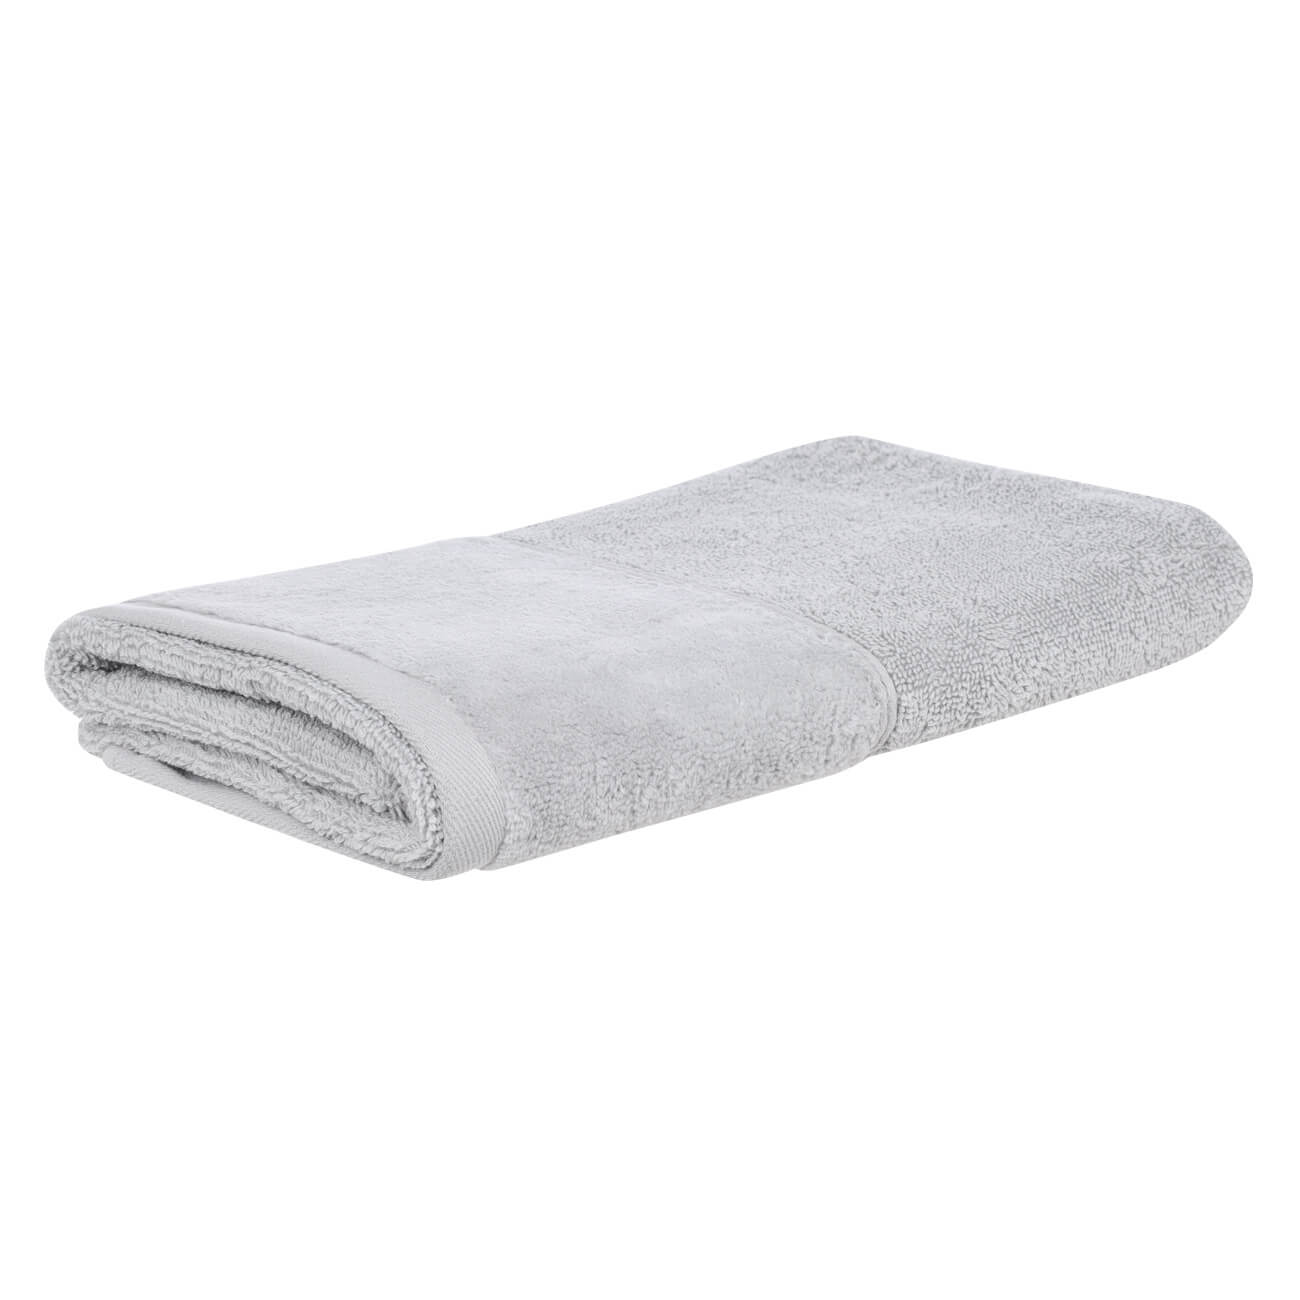 Полотенце, 70х140 см, хлопок, серое, Velvet touch полотенце eumenia 70x140 см белое